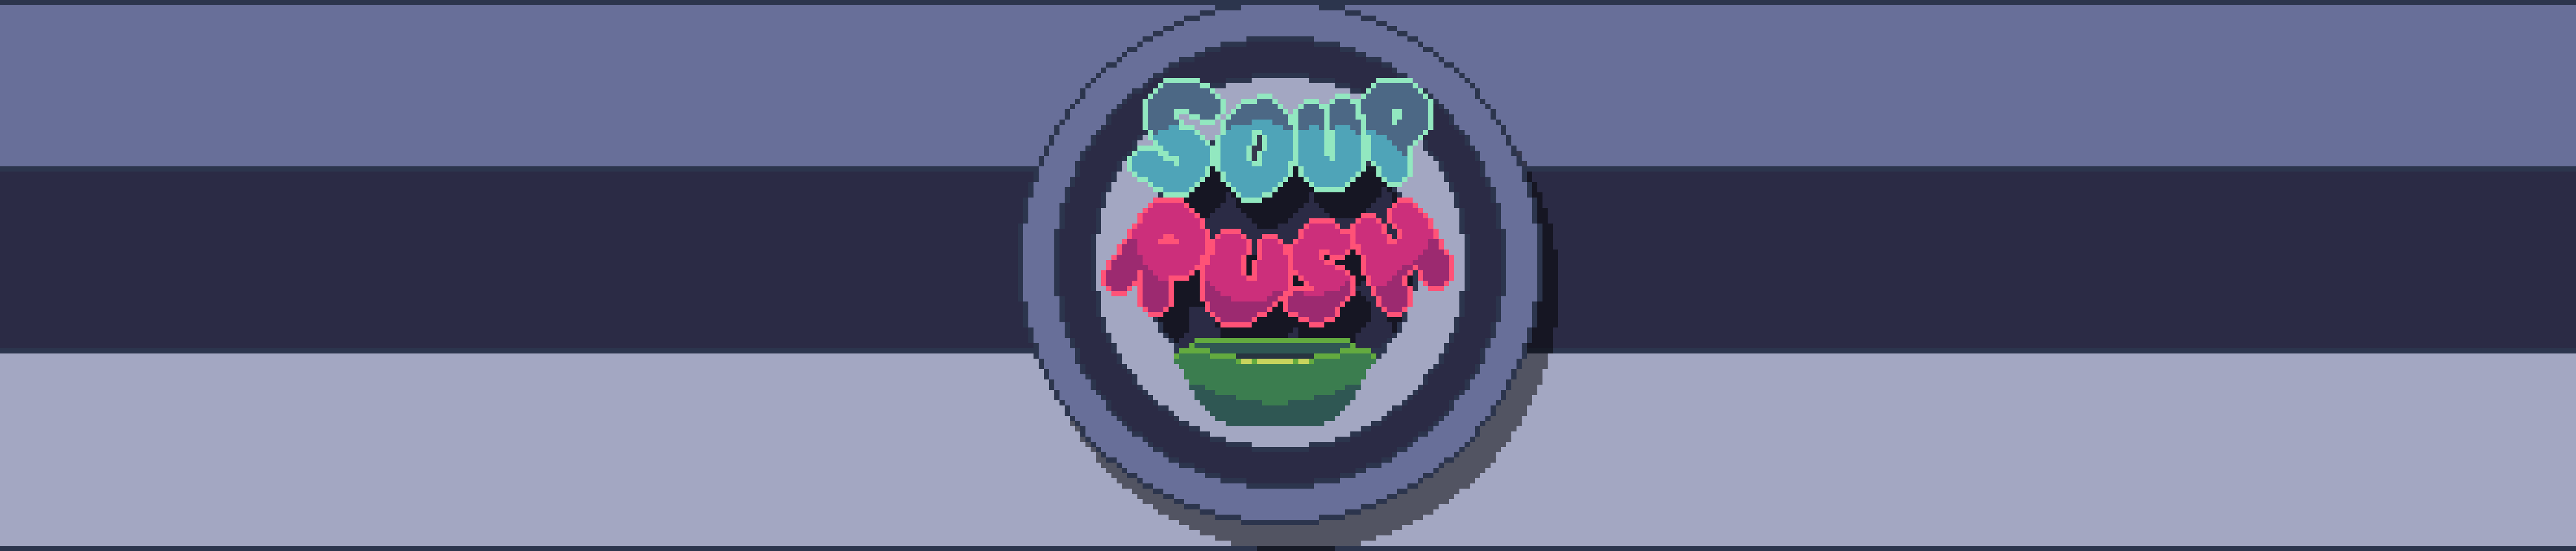 Soup Rush